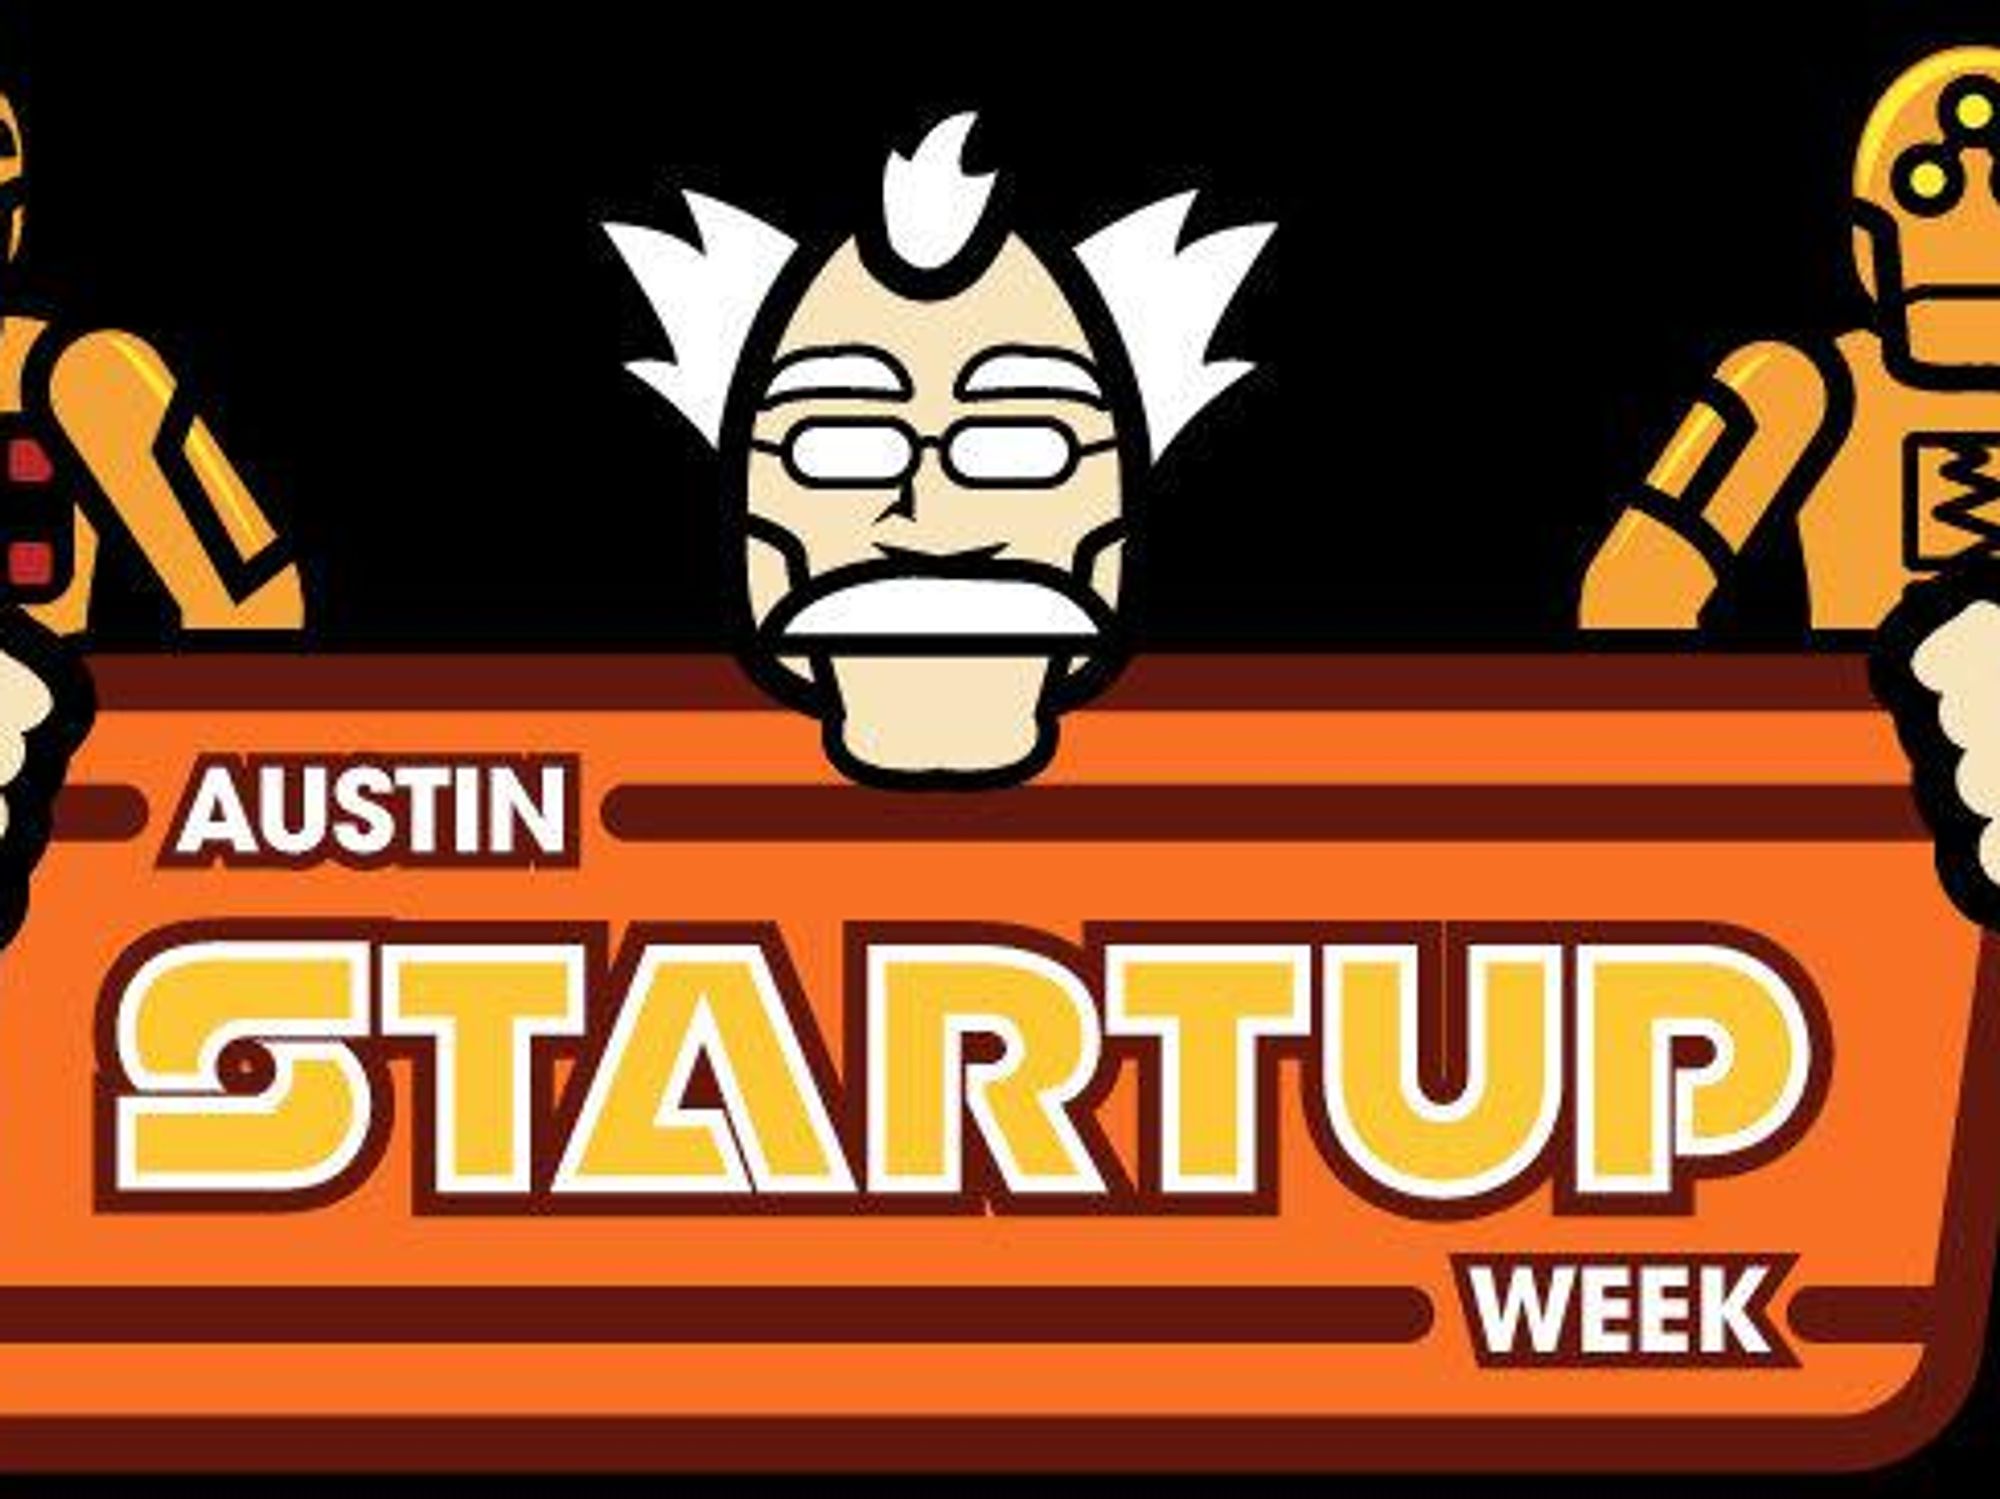 Austin_photo: event_austin startup week_logo